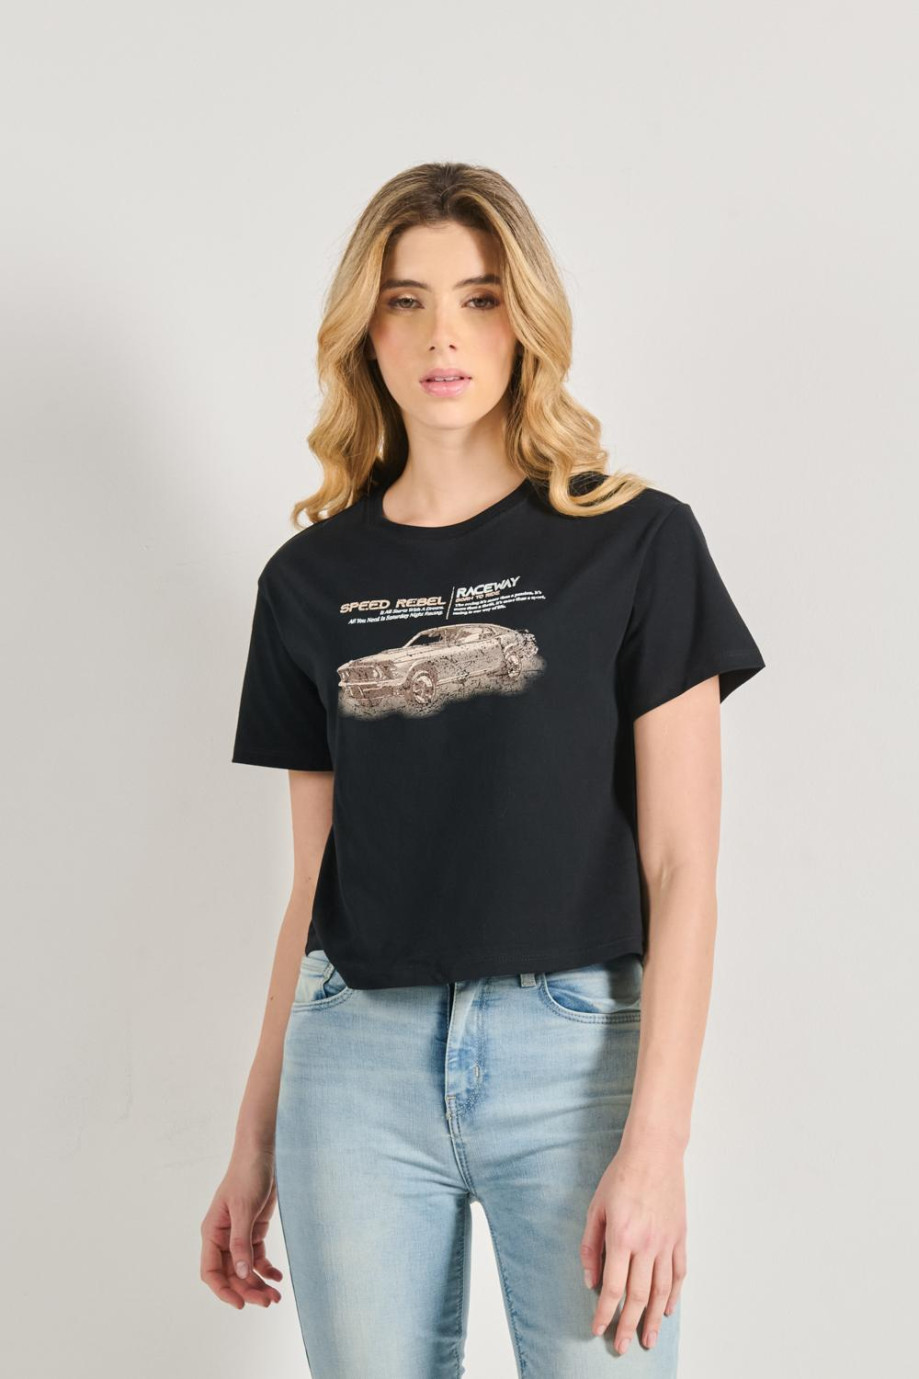 Camiseta crop top unicolor en algodón con estampado racer